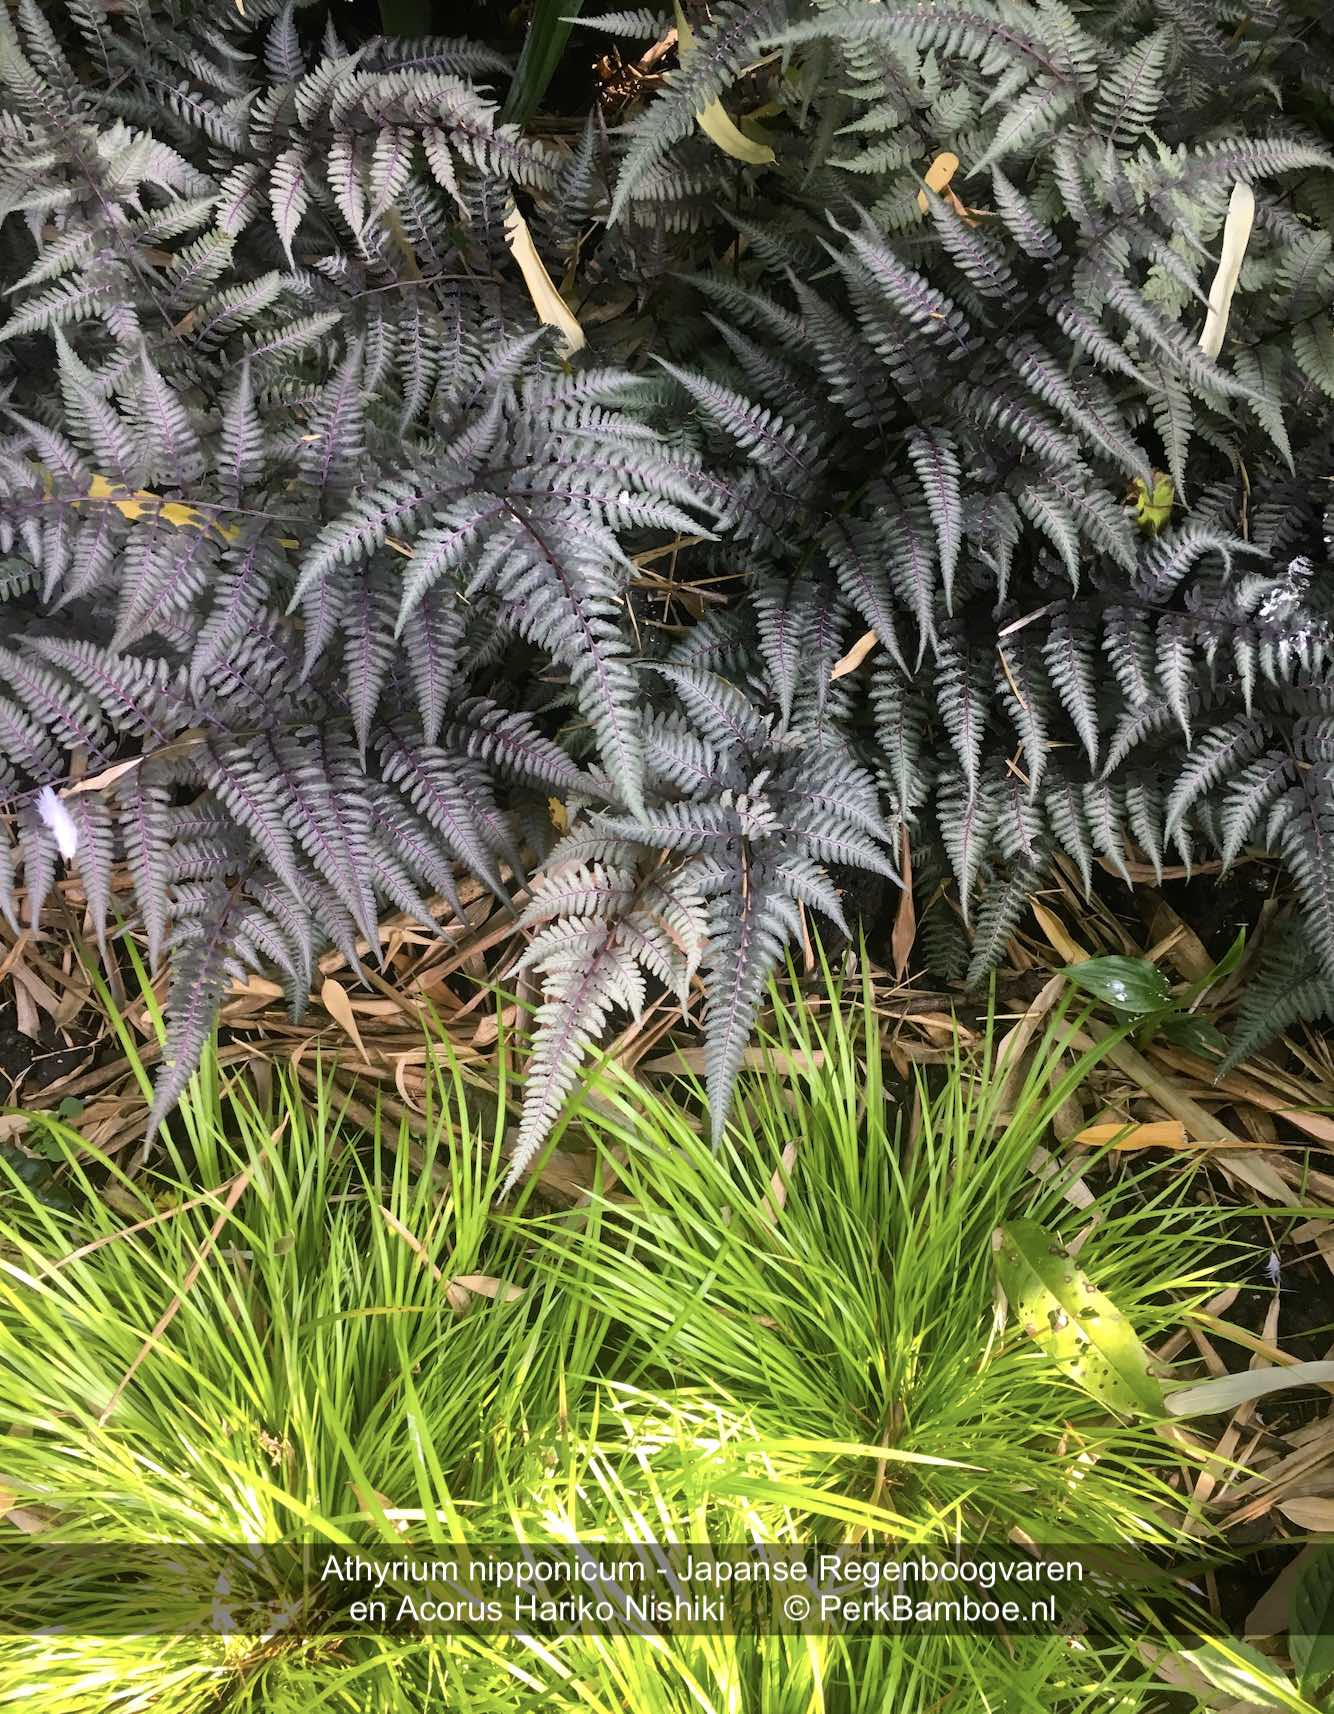 Athyrium nipponicum Japanese Raibow fern and Acorus Hakiro Nishiki in our garden PerkBamboo com